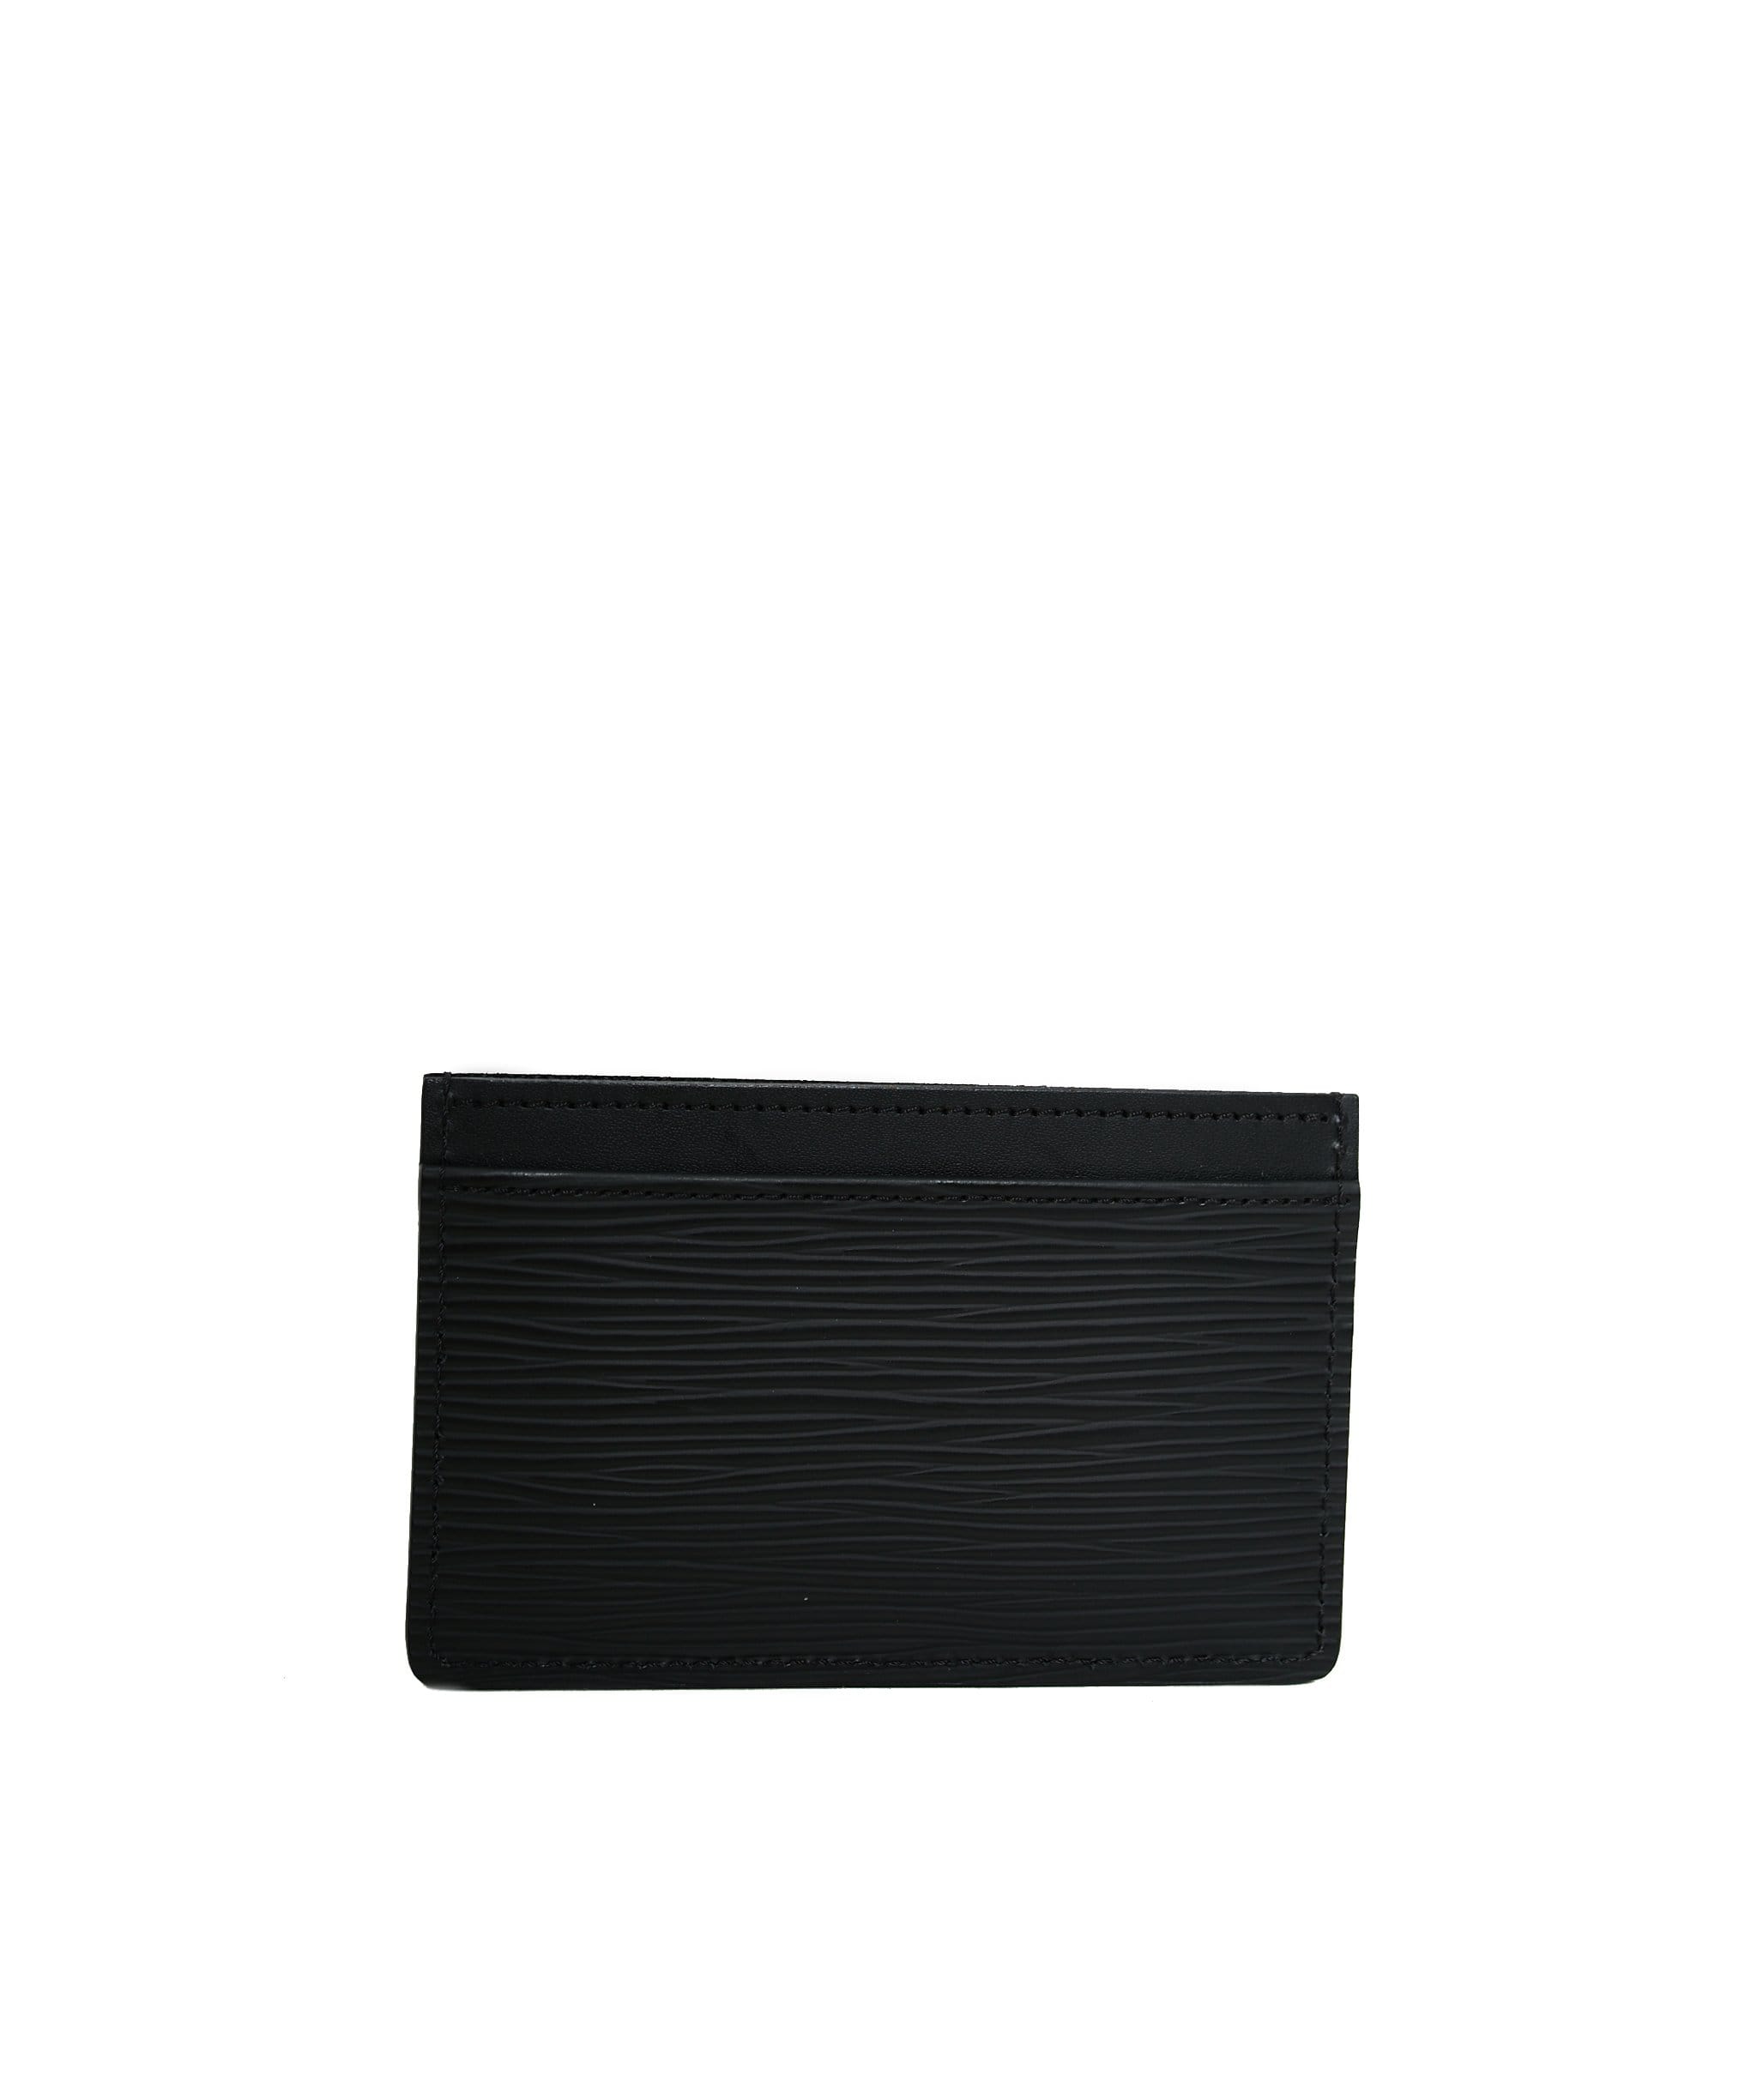 Louis Vuitton Louis Vuitton epi leather card holder black  - ADL1107